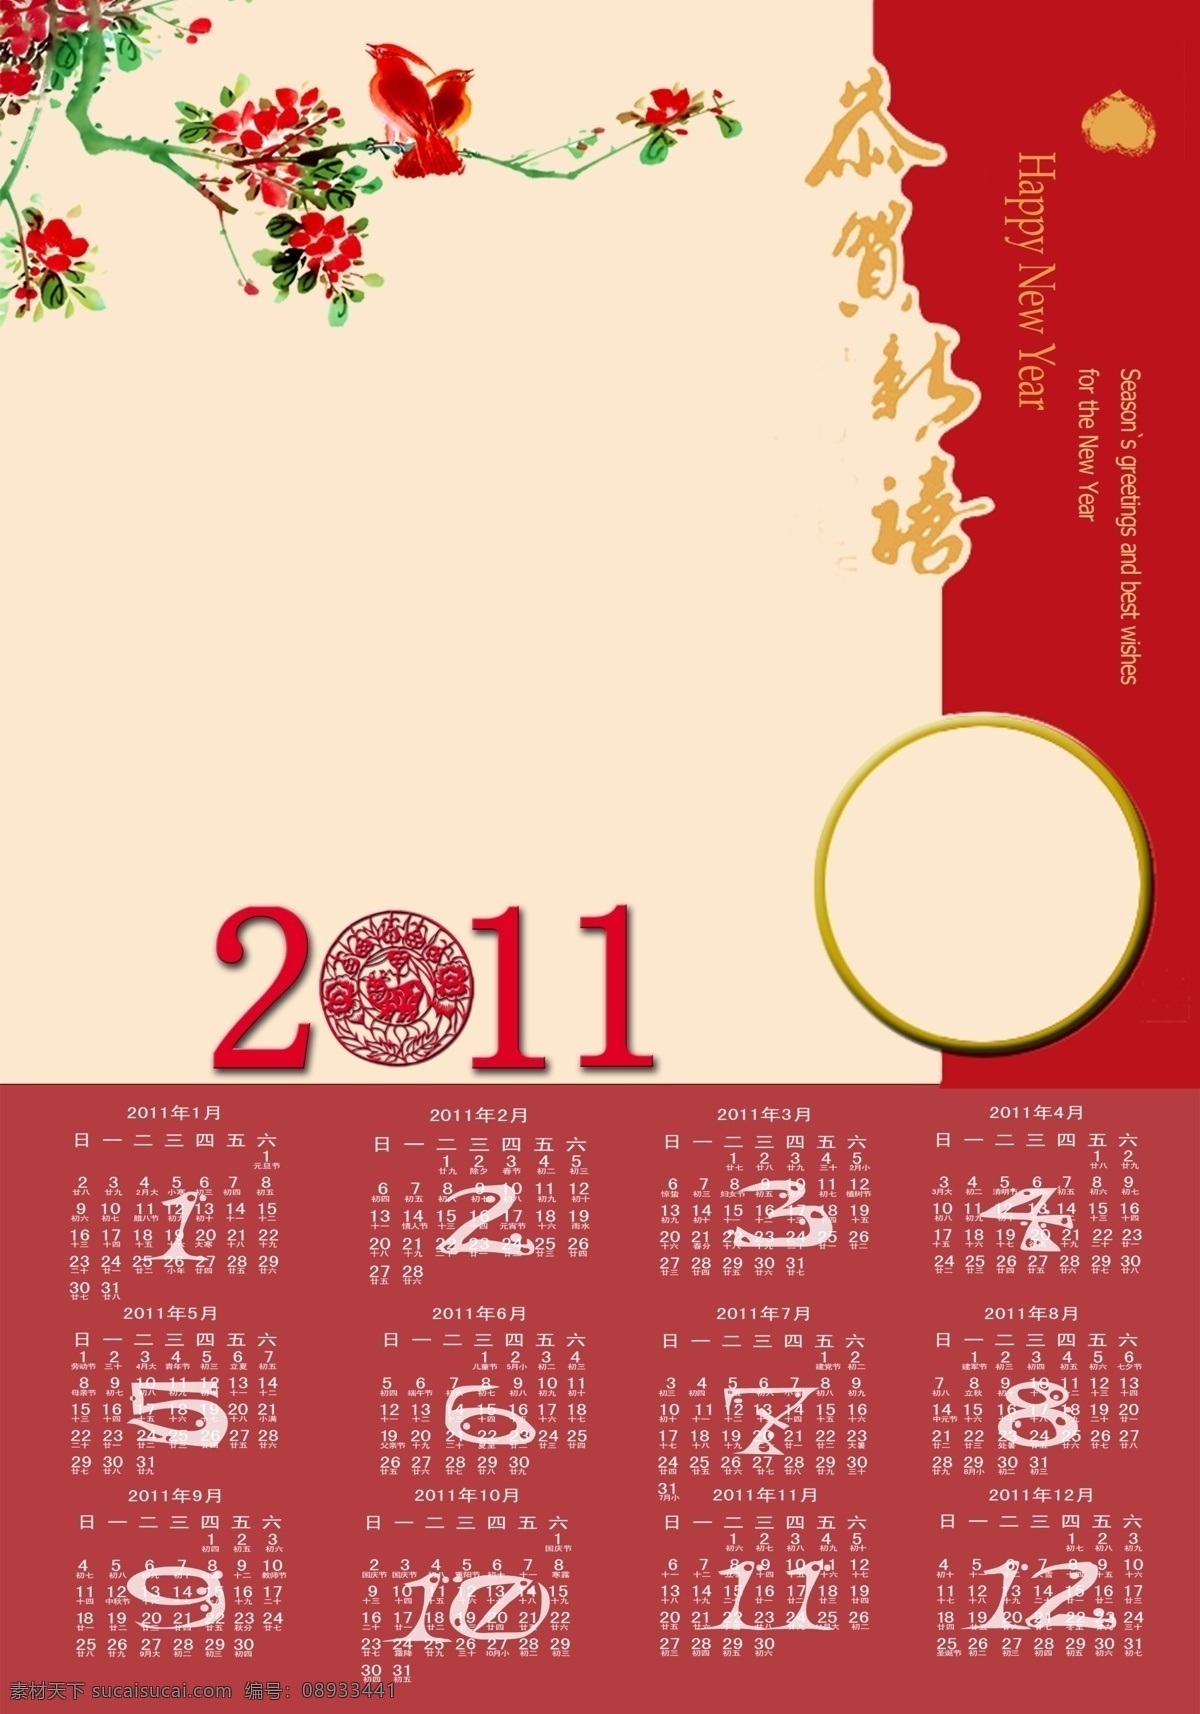 2011 年 日历 简洁 模板 挂历 挂历模板 兔年挂历 日历台历 广告设计模板 psd素材 红色